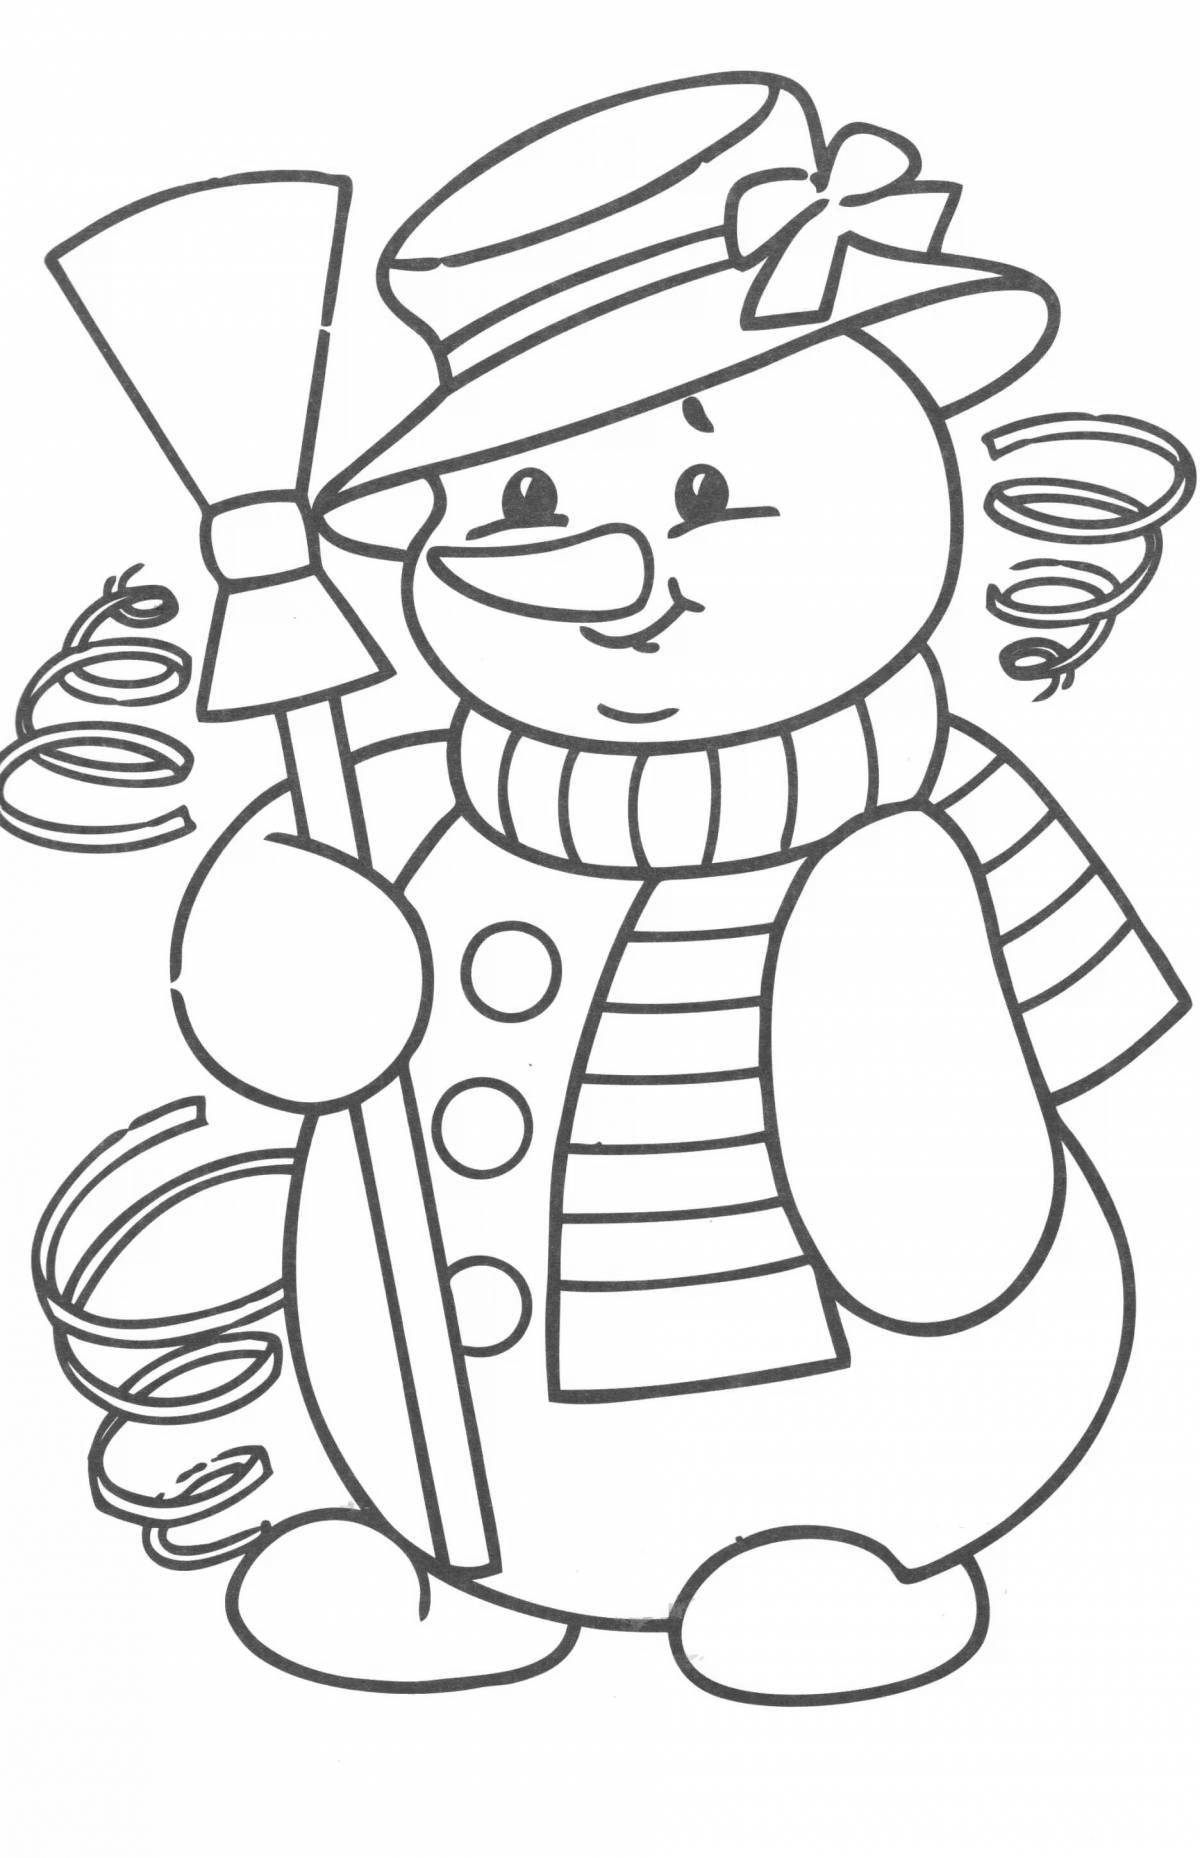 Живая раскраска снеговик с метлой